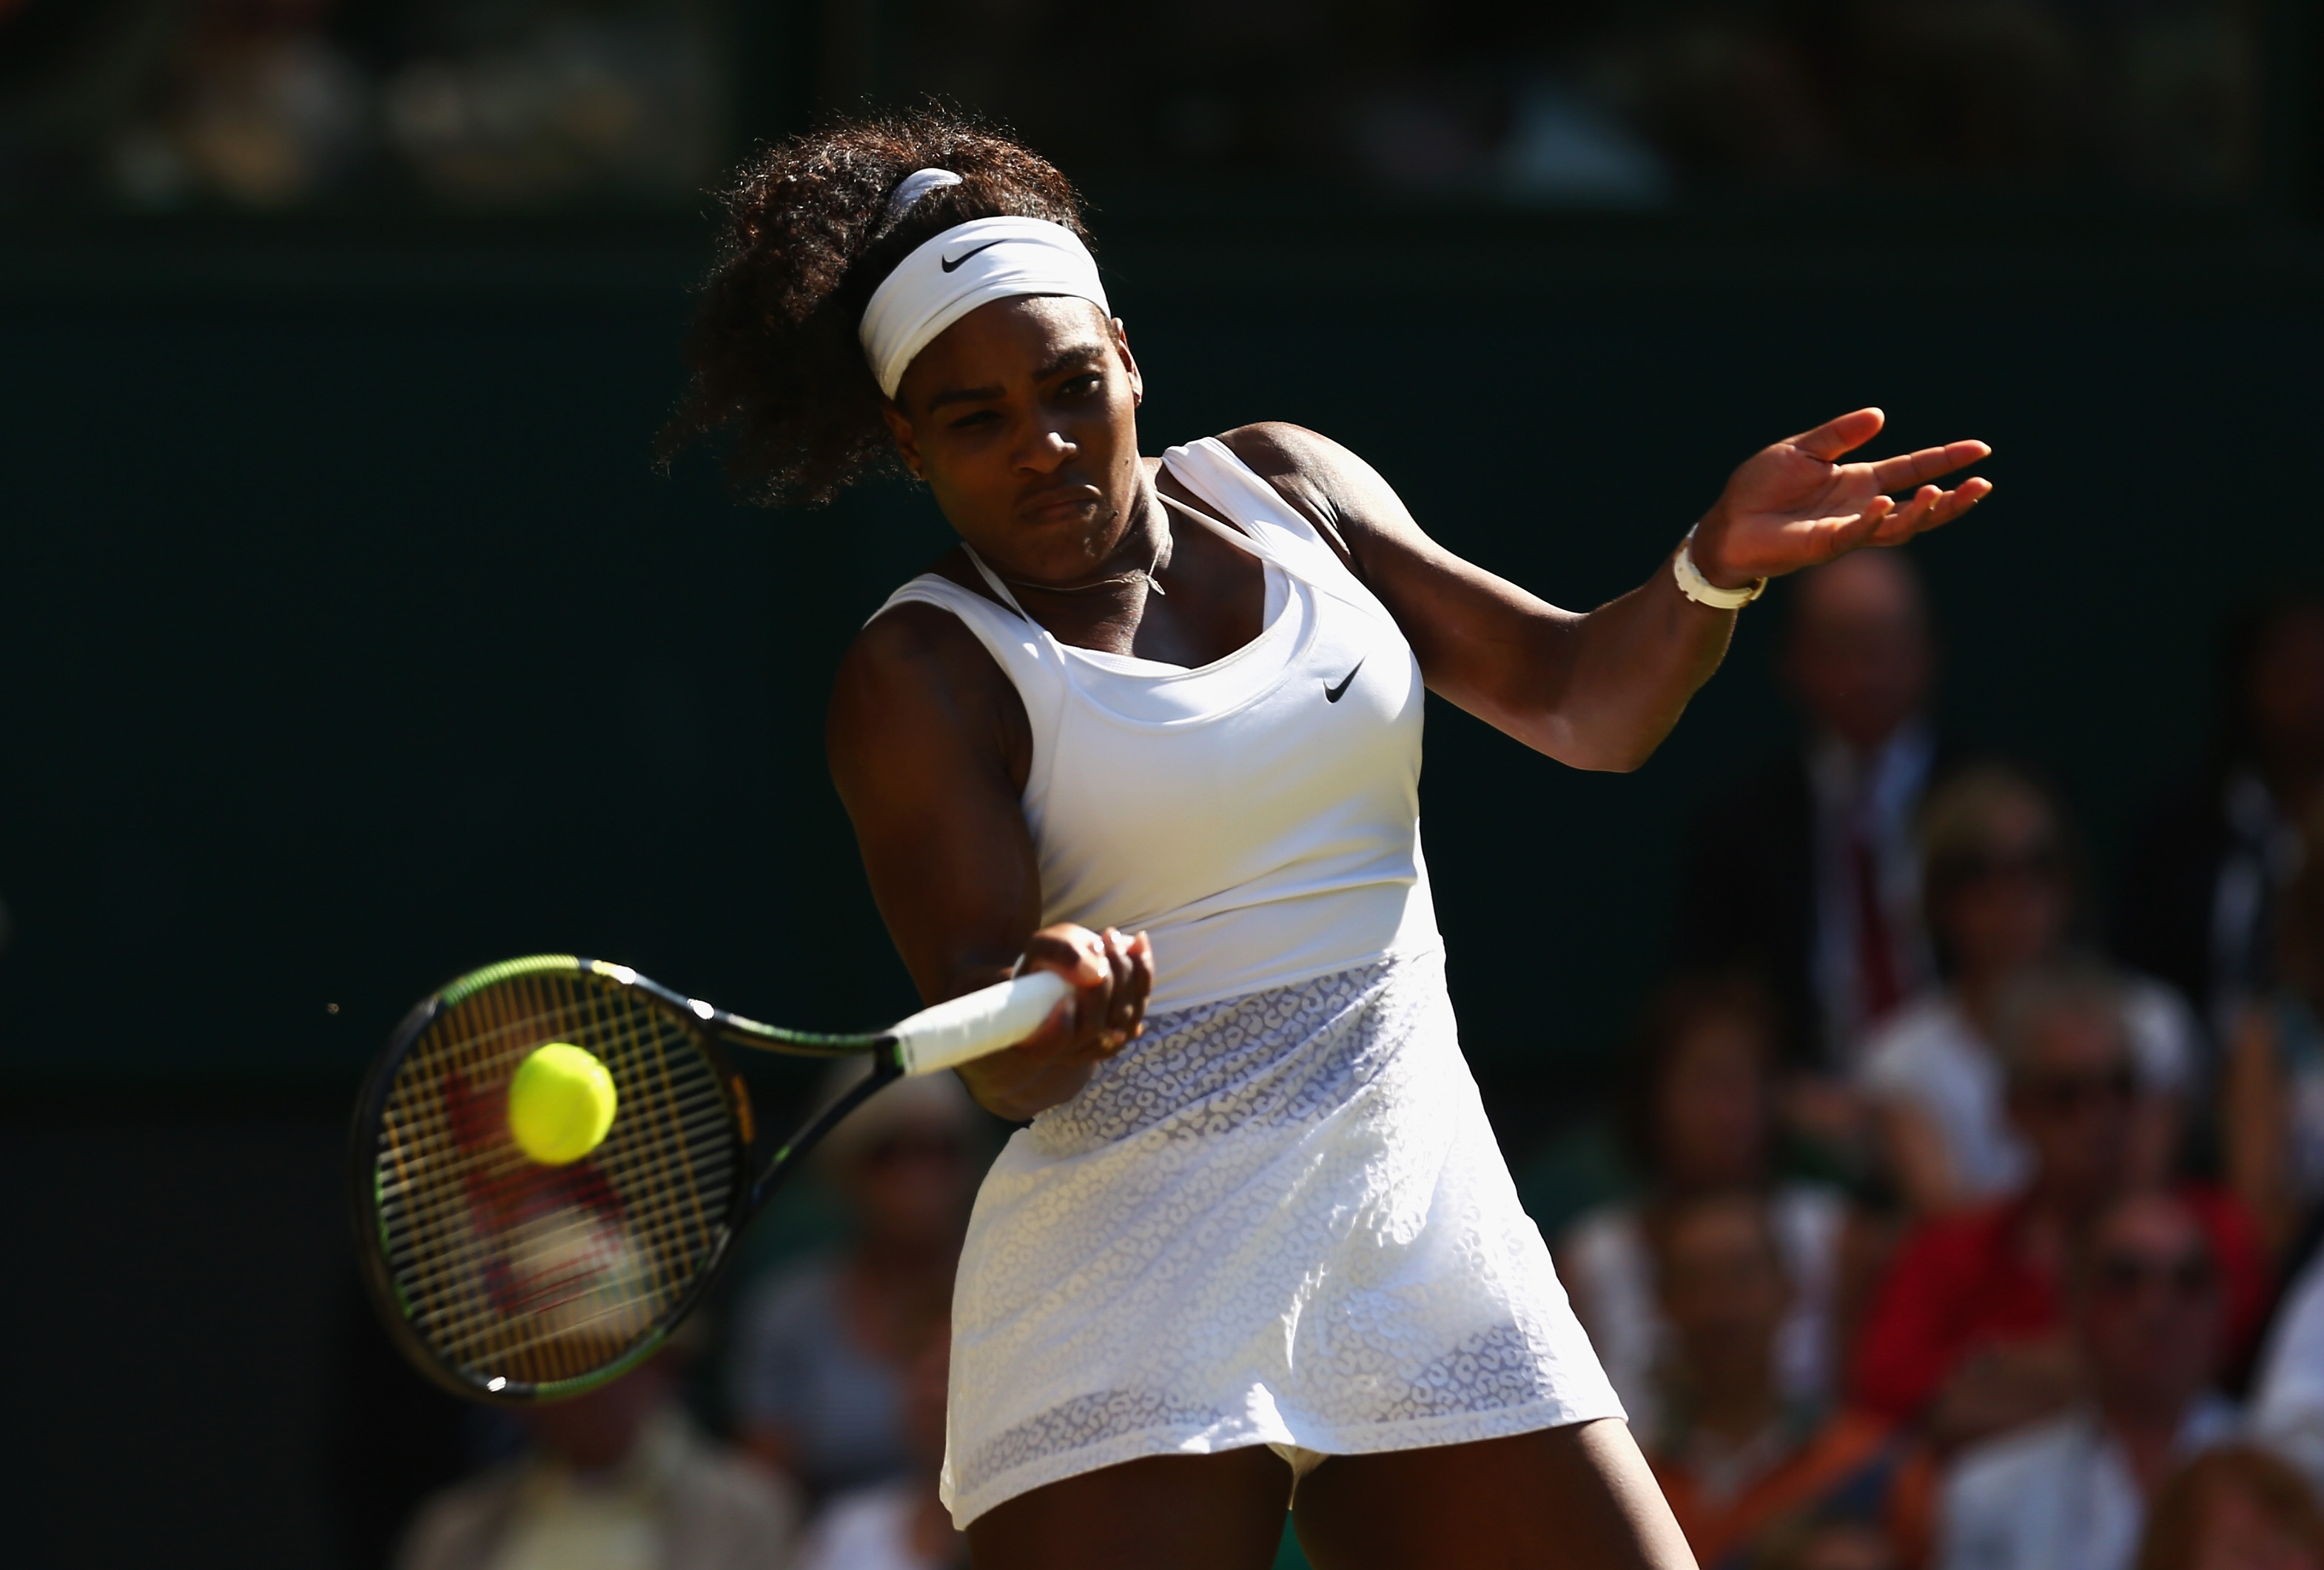 Watch Wimbledon Tennis Women's Final Live Stream Online